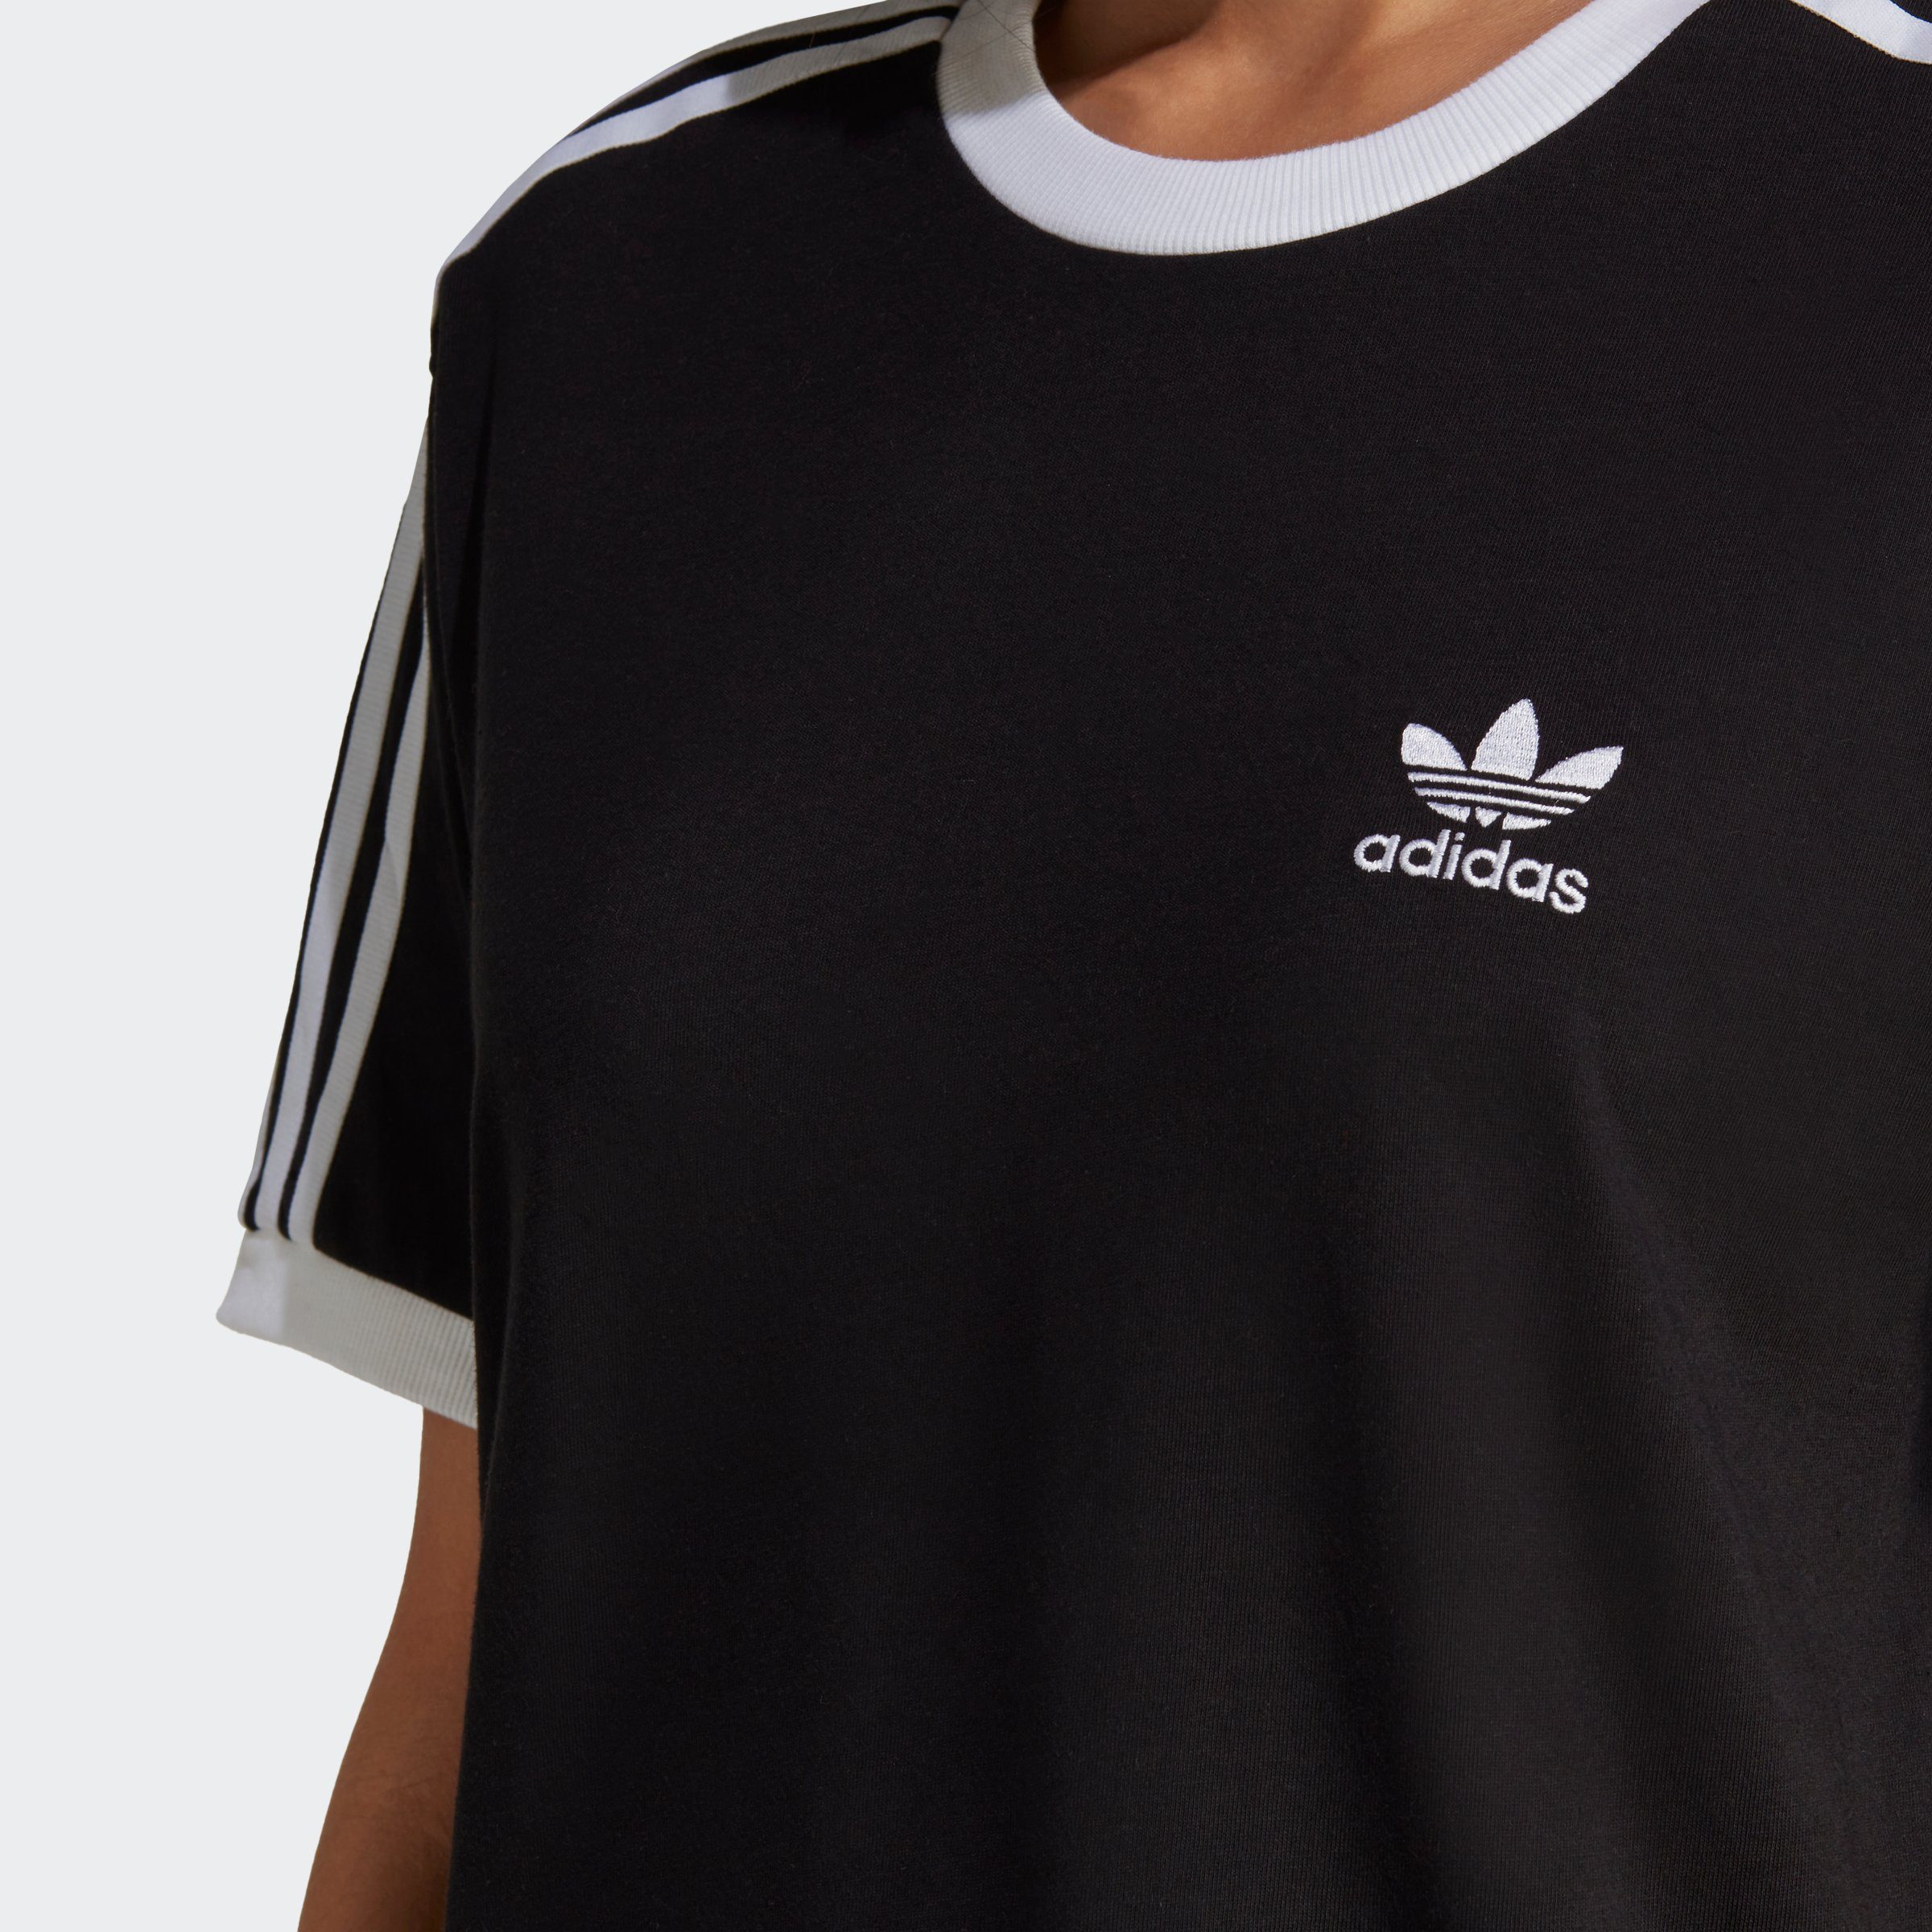 adidas Originals T-Shirt ADICOLOR CLASSICS 3-STREIFEN Black